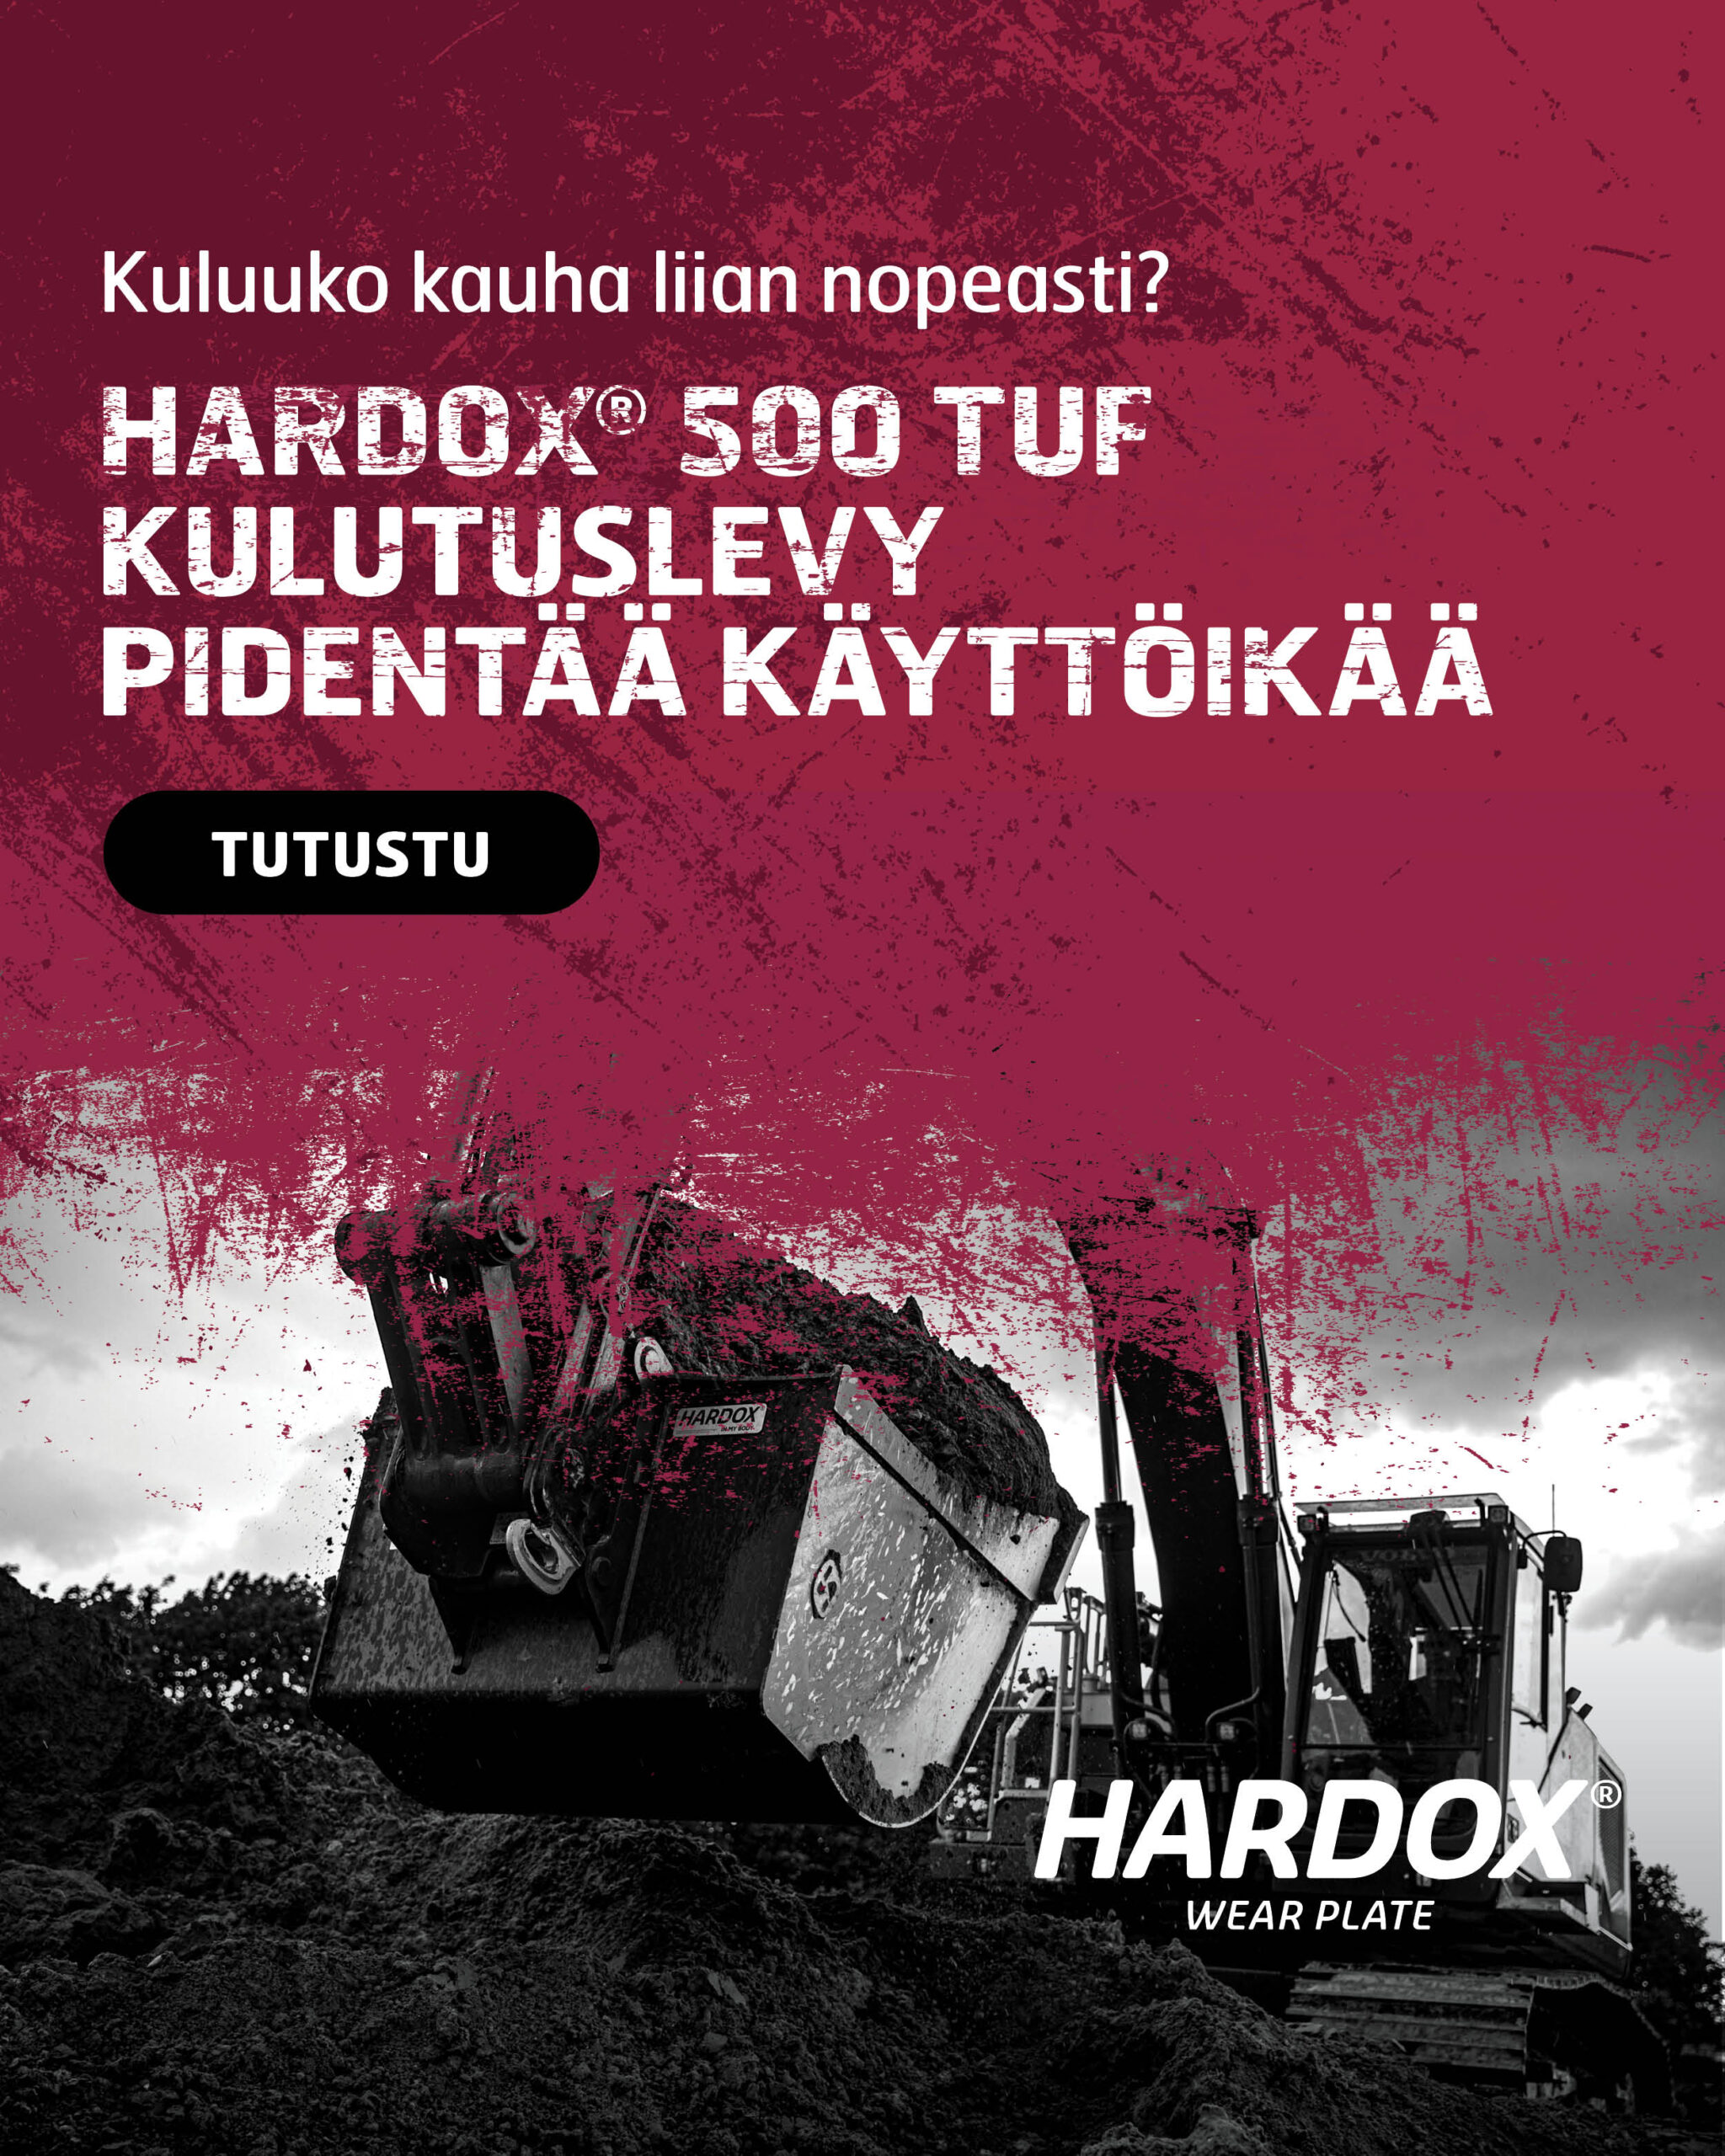 Finnish - Hardox 500 Tuf